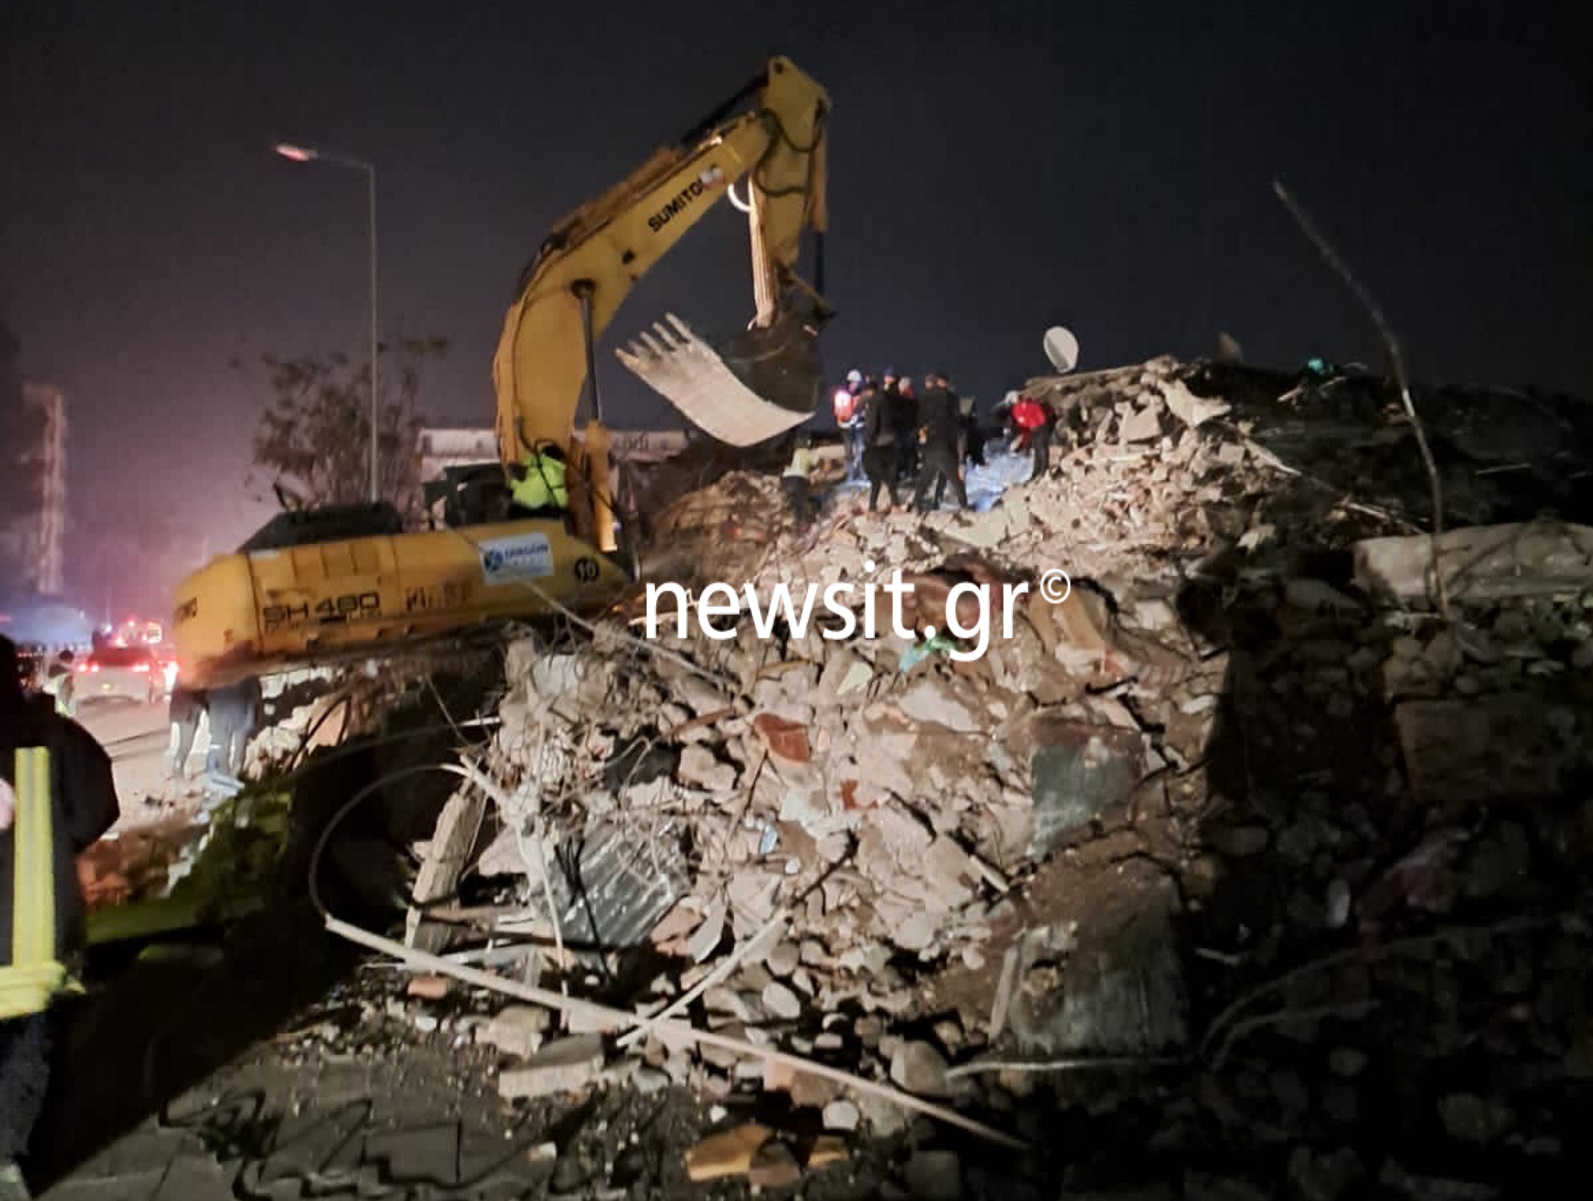 Σεισμός στην Τουρκία: Οδοιπορικό του newsit.gr στα χαλάσματα της κατεστραμμένης επαρχίας Χατάι